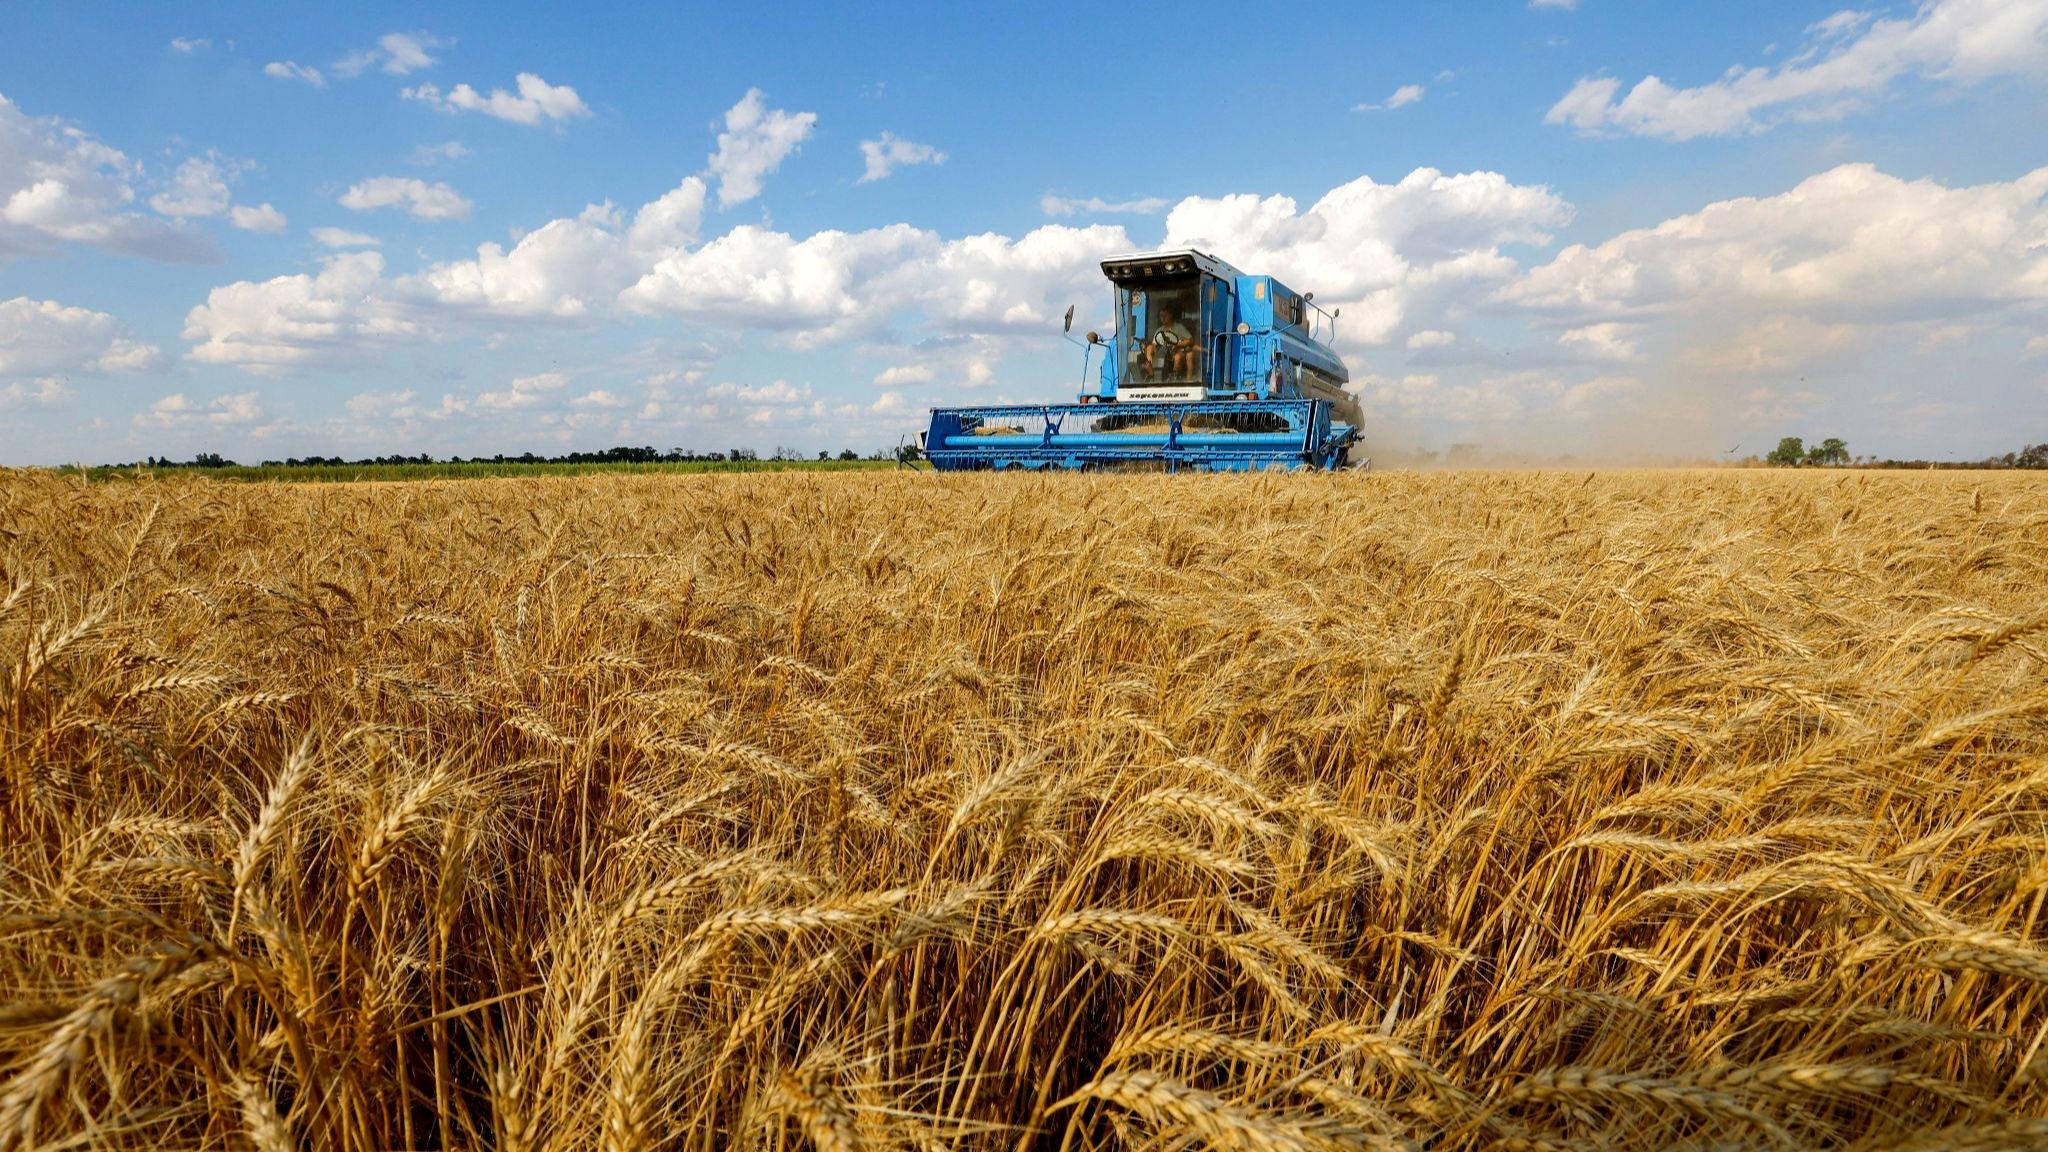 نوبت به قیمت گندم و کلزا رسید | افزایش قیمت گندم و پرداخت مطالبات گندمکاران به کجا رسید؟